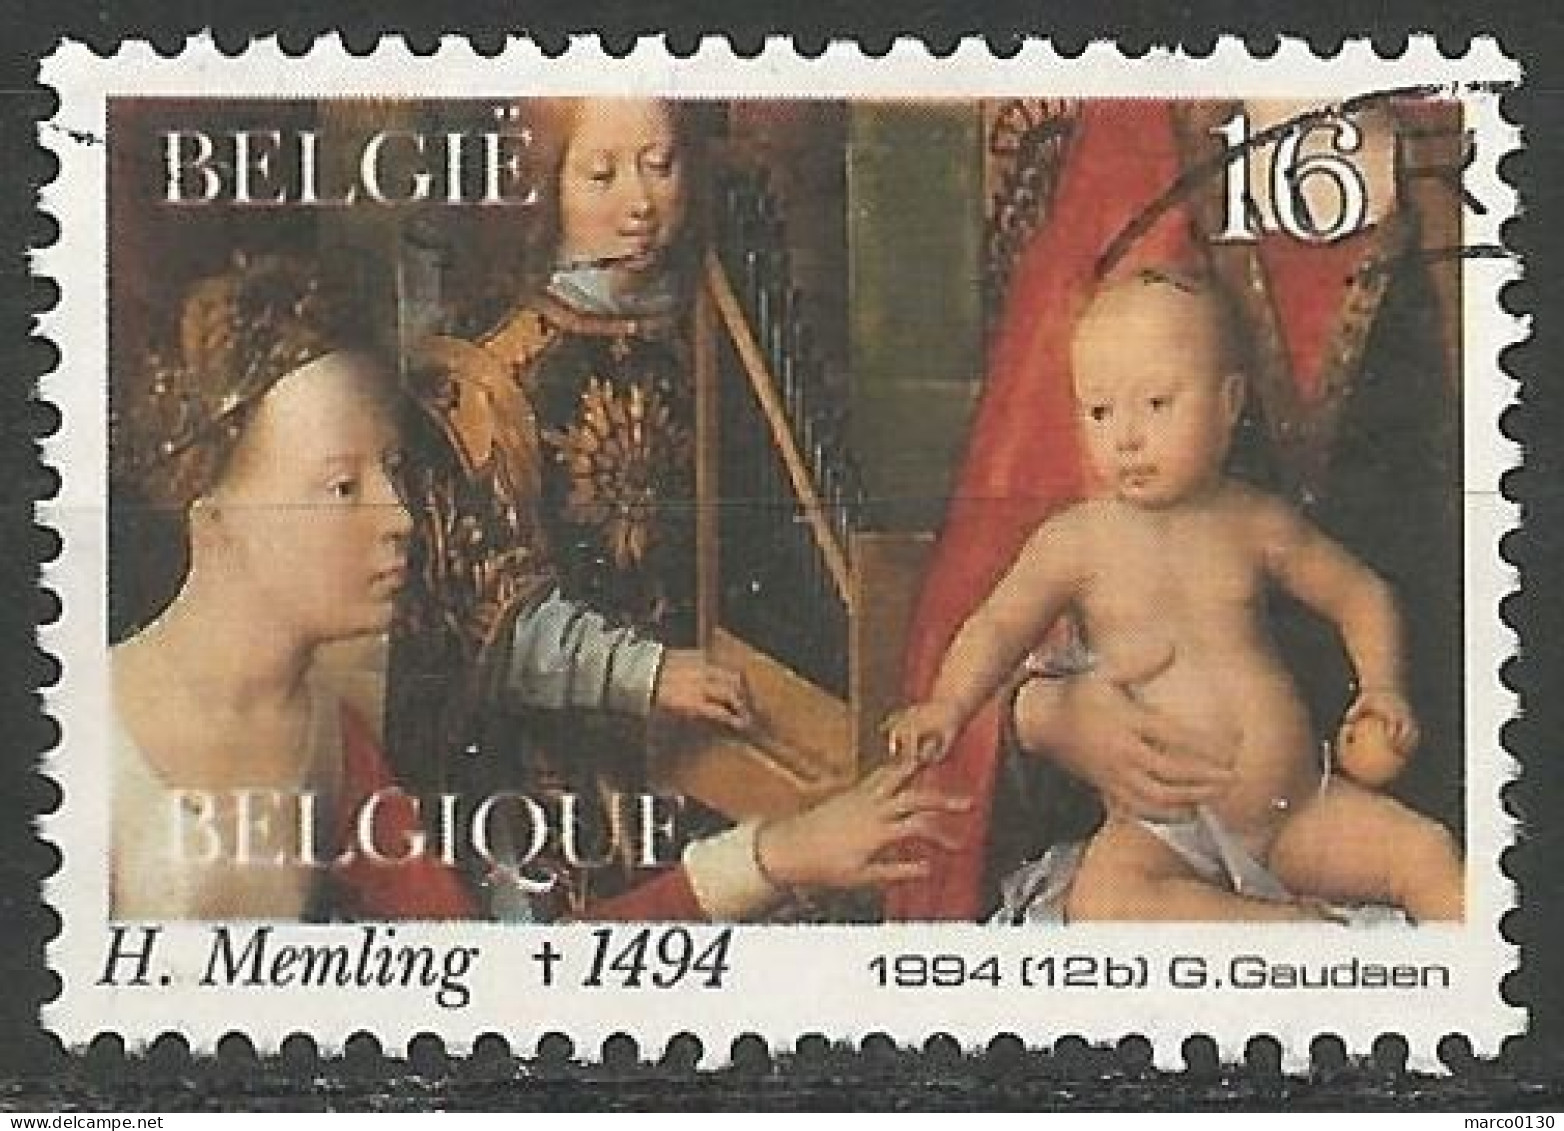 BELGIQUE N° 2570 OBLITERE - Used Stamps